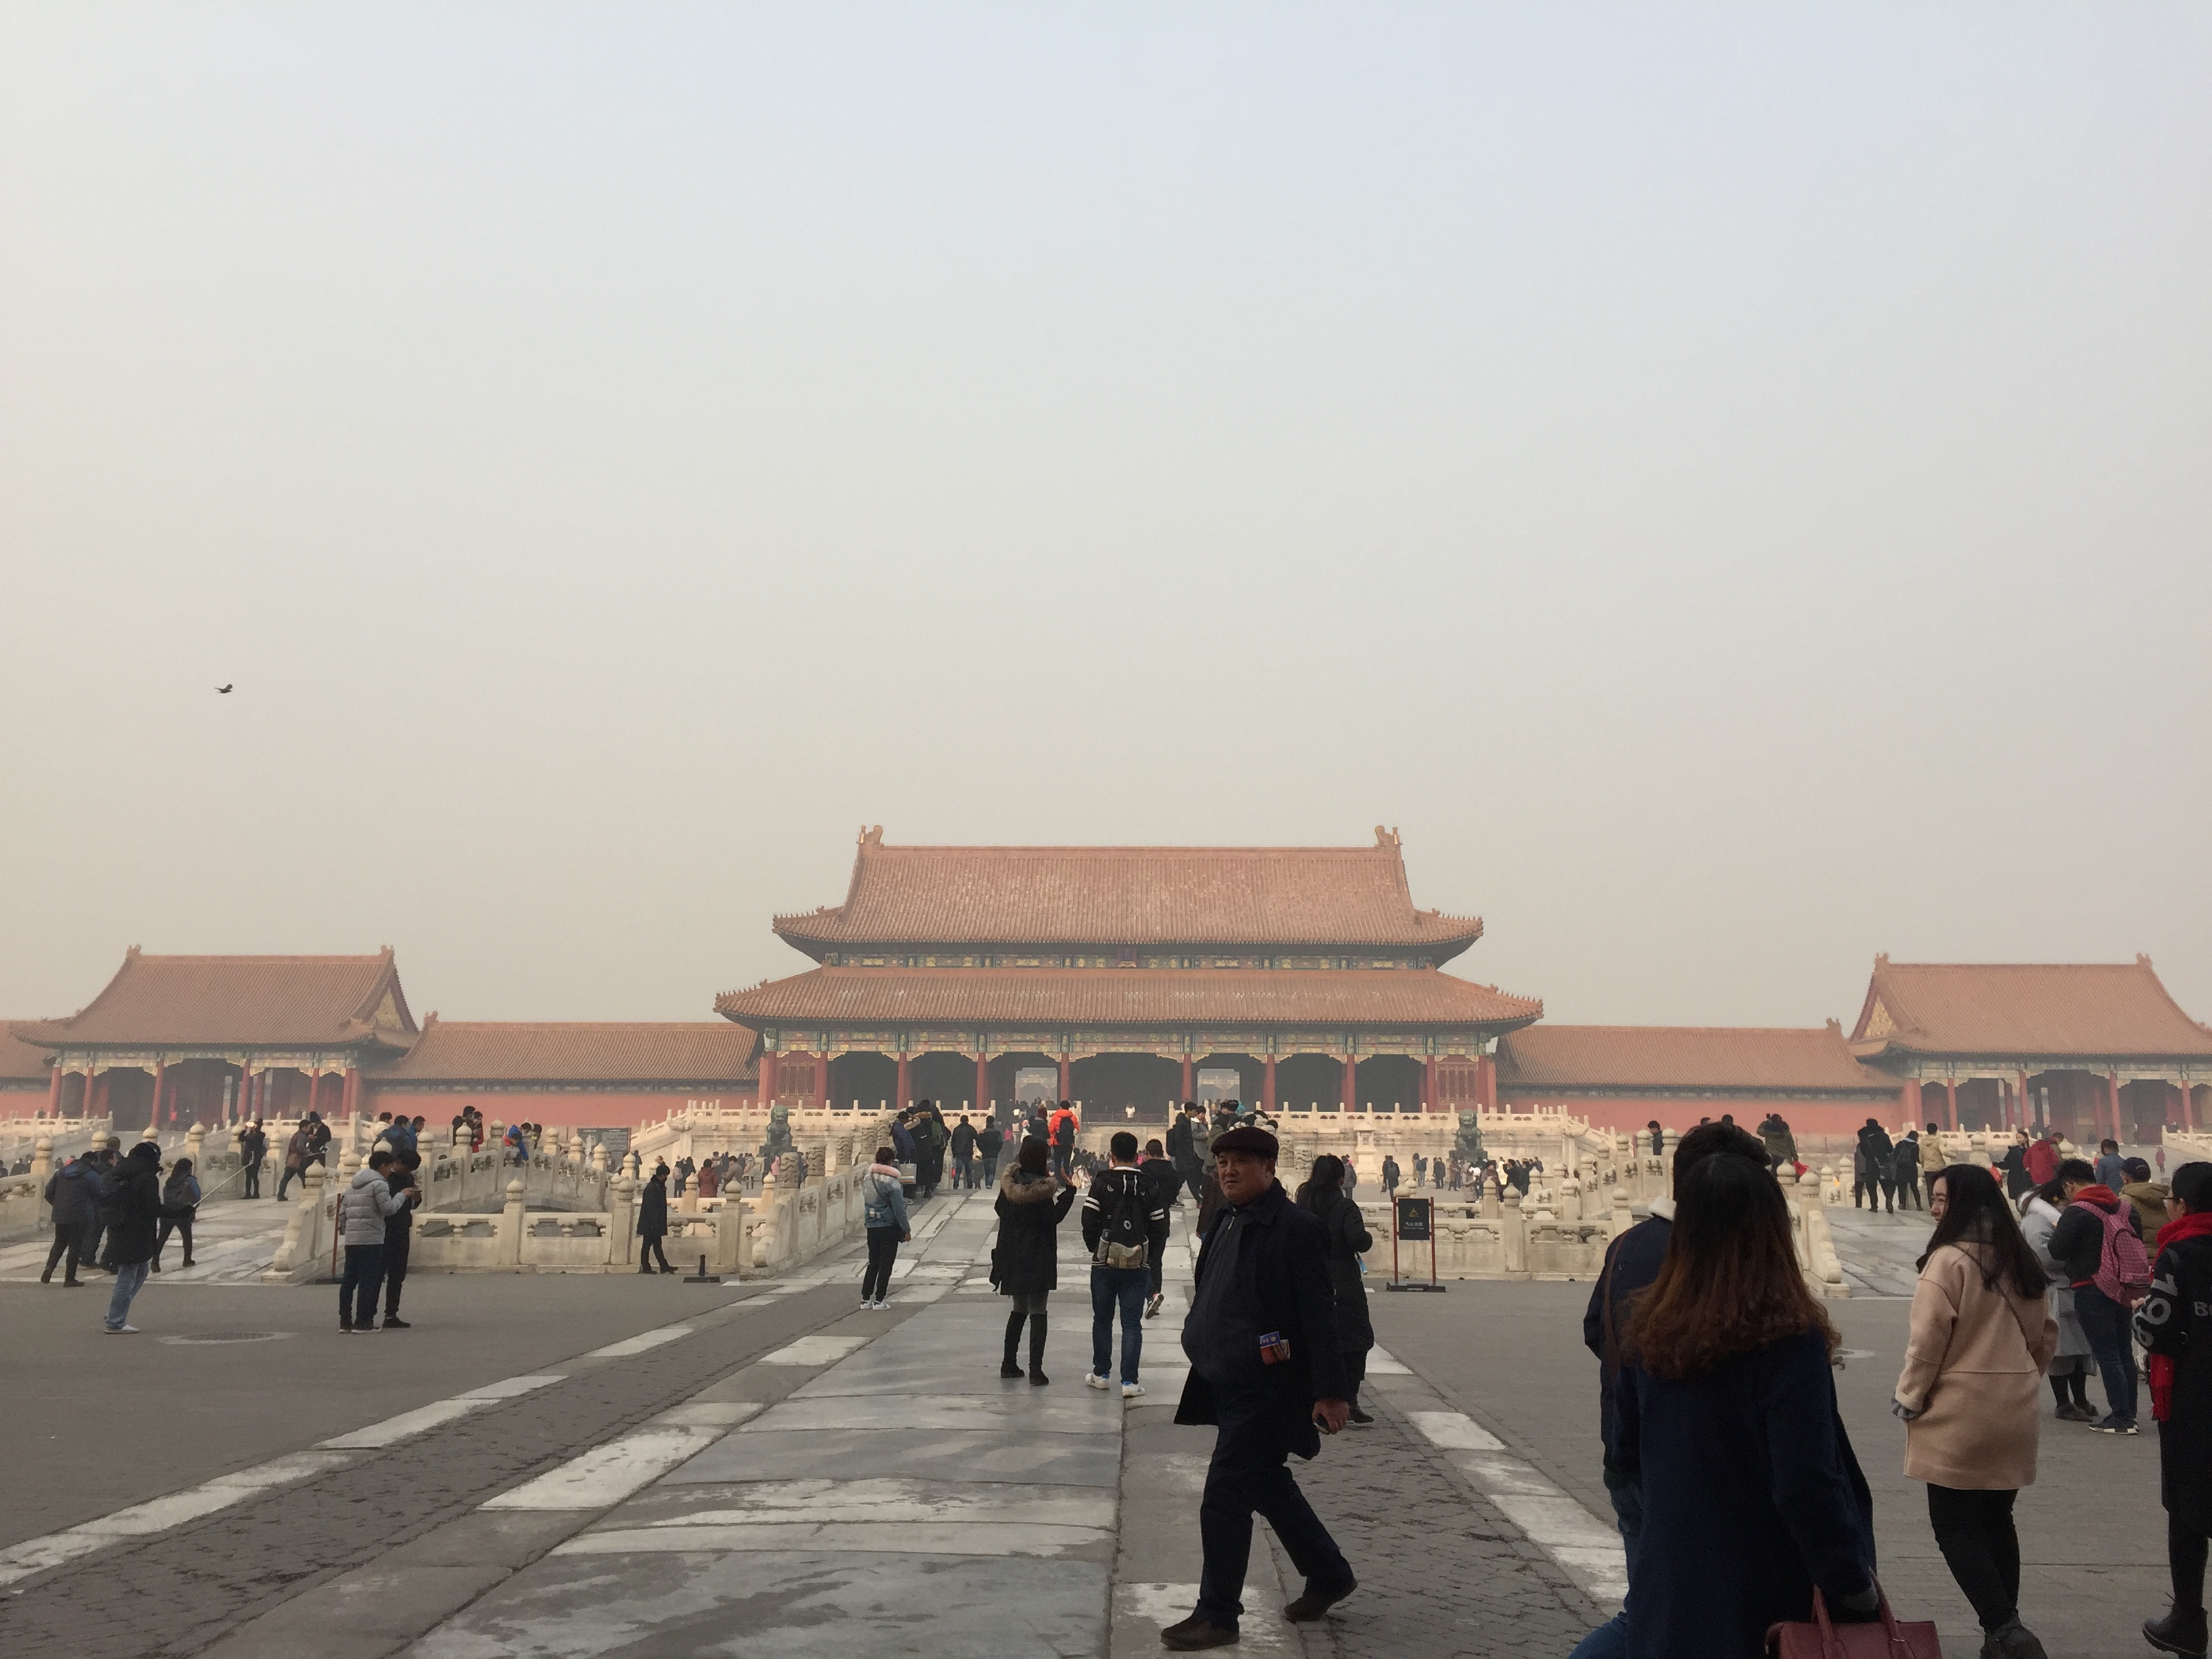 Beijing Forbidden City Tiananmen Square